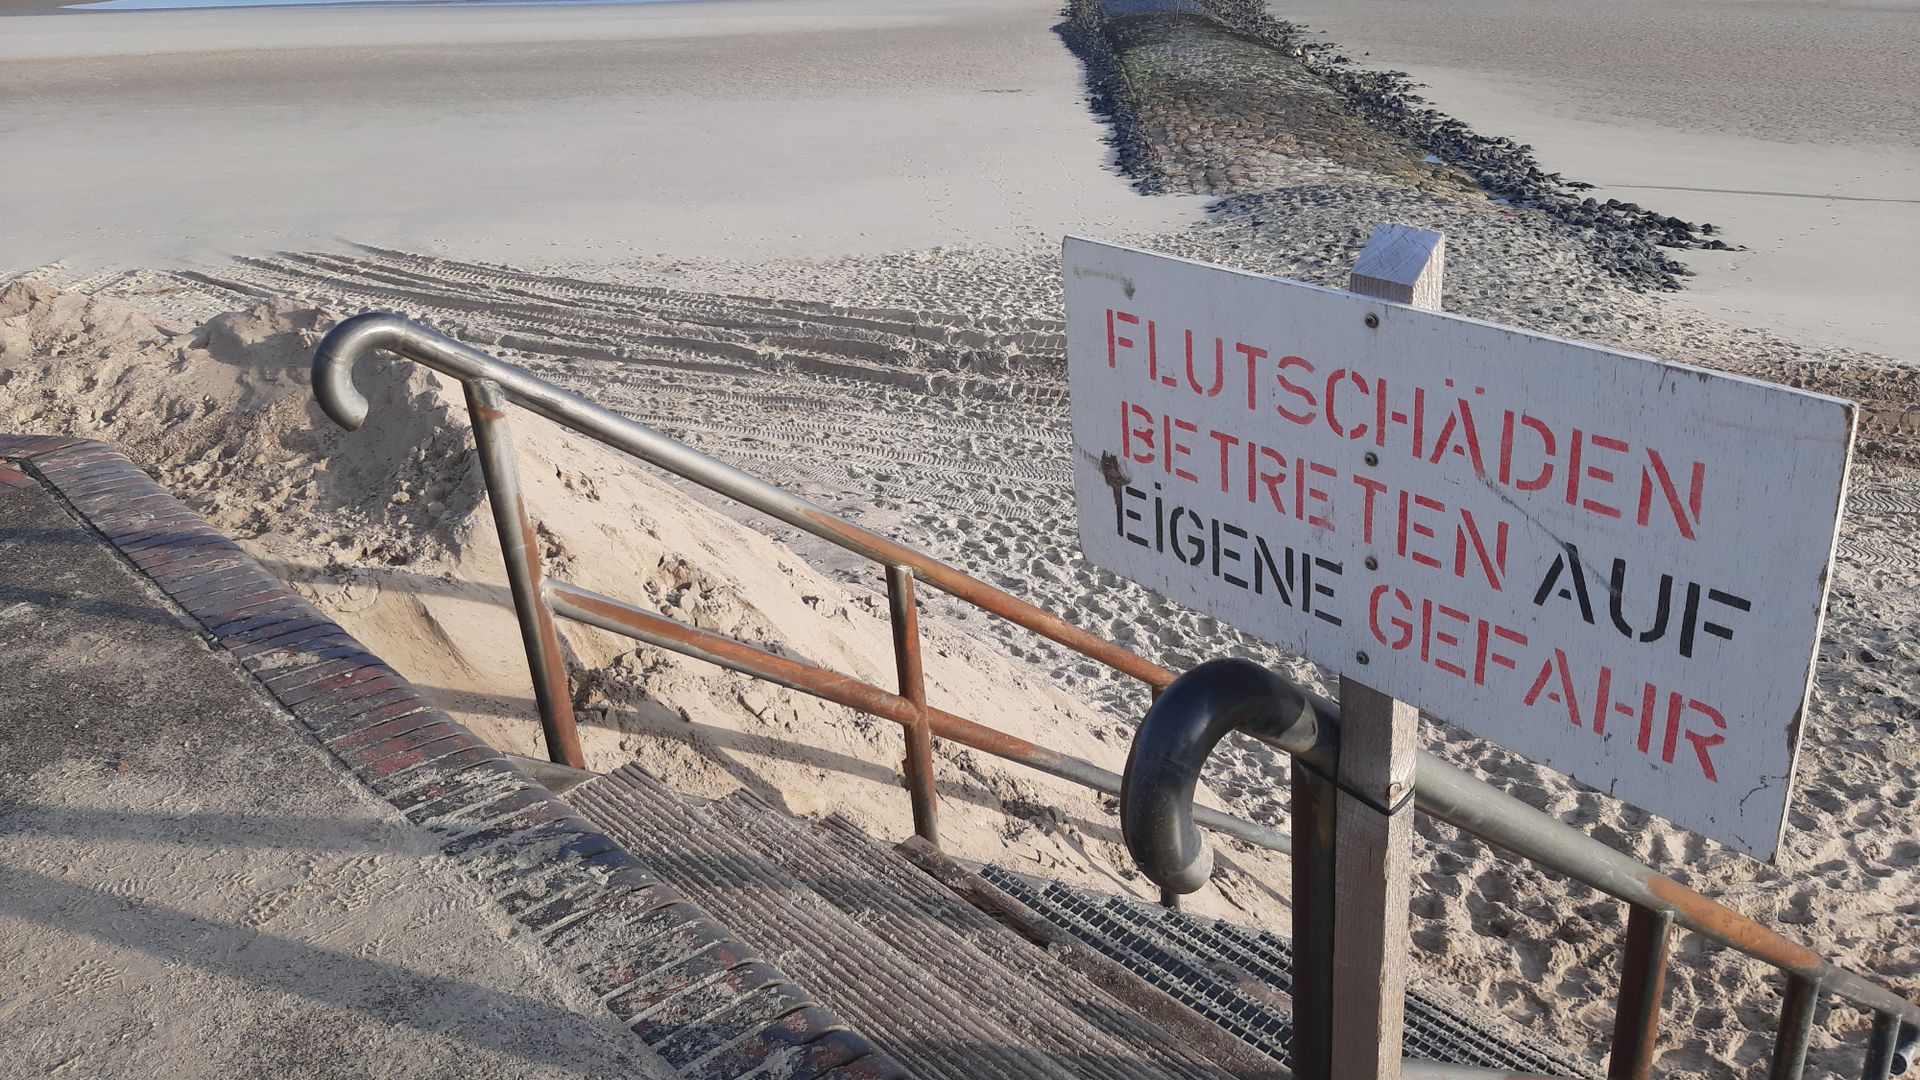 wangerooge, norderney, borkum - nordseeinseln nach sturmfluten: dem strand fehlt der sand